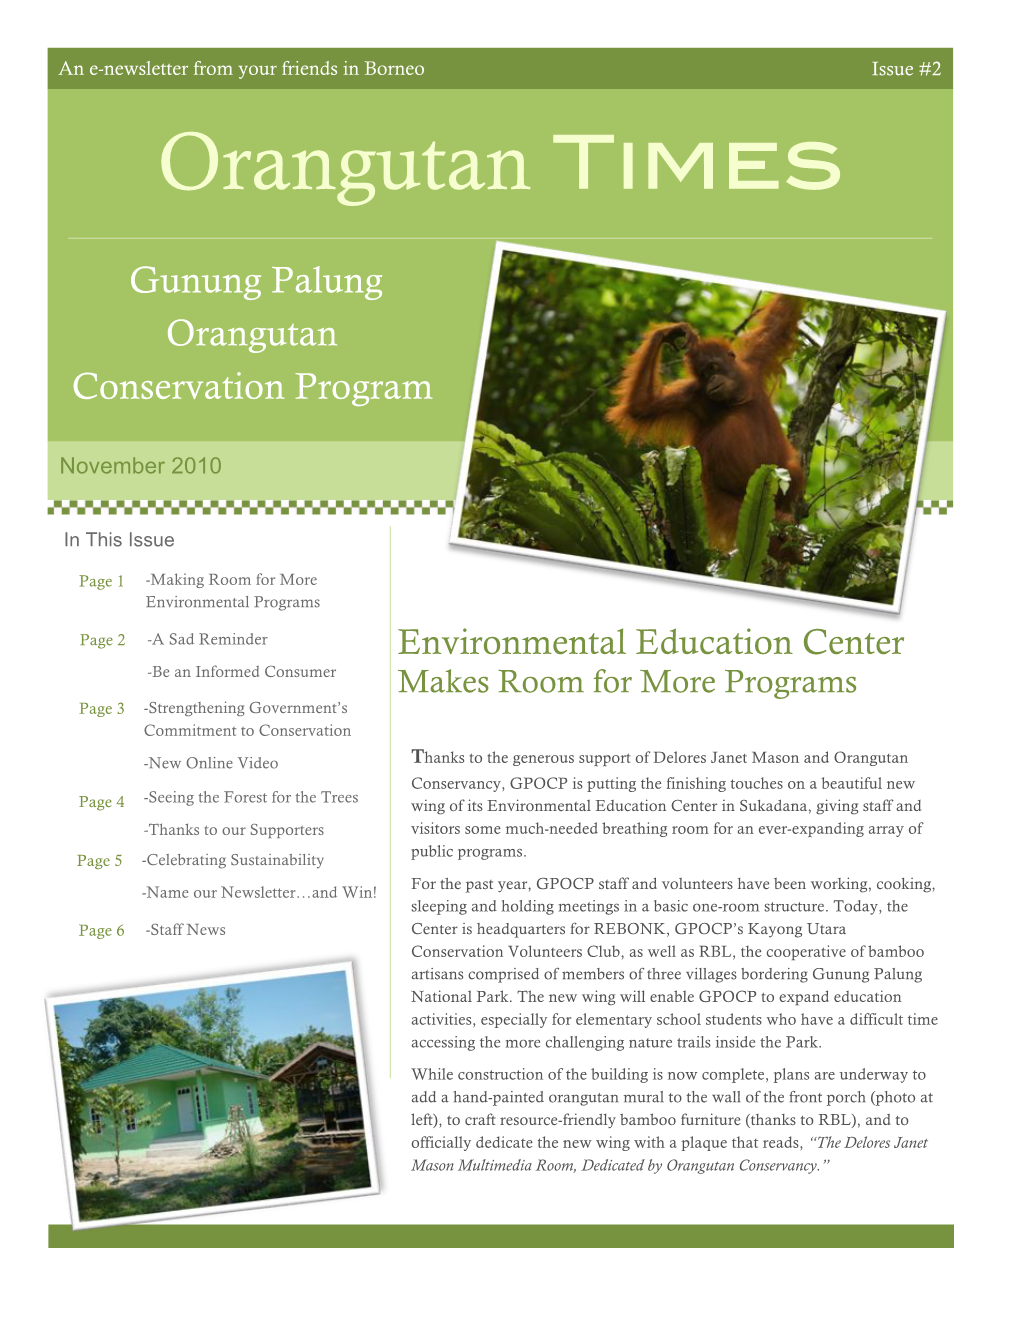 Orangutan Times Vol. 2